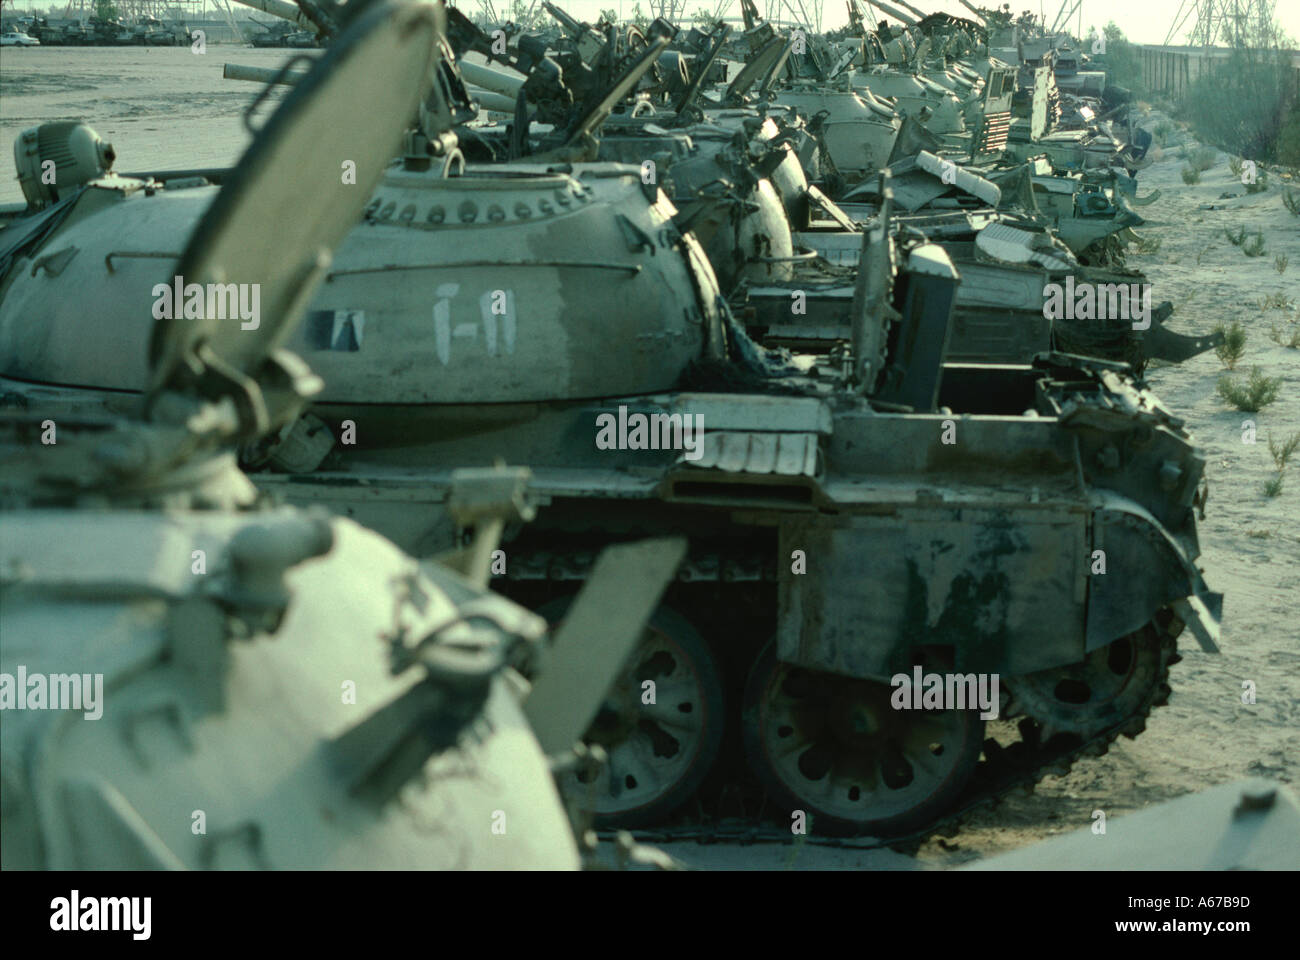 Erbeuteten irakische Panzer auf der Messe in Kuwait nach dem ersten Golfkrieg Stockfoto